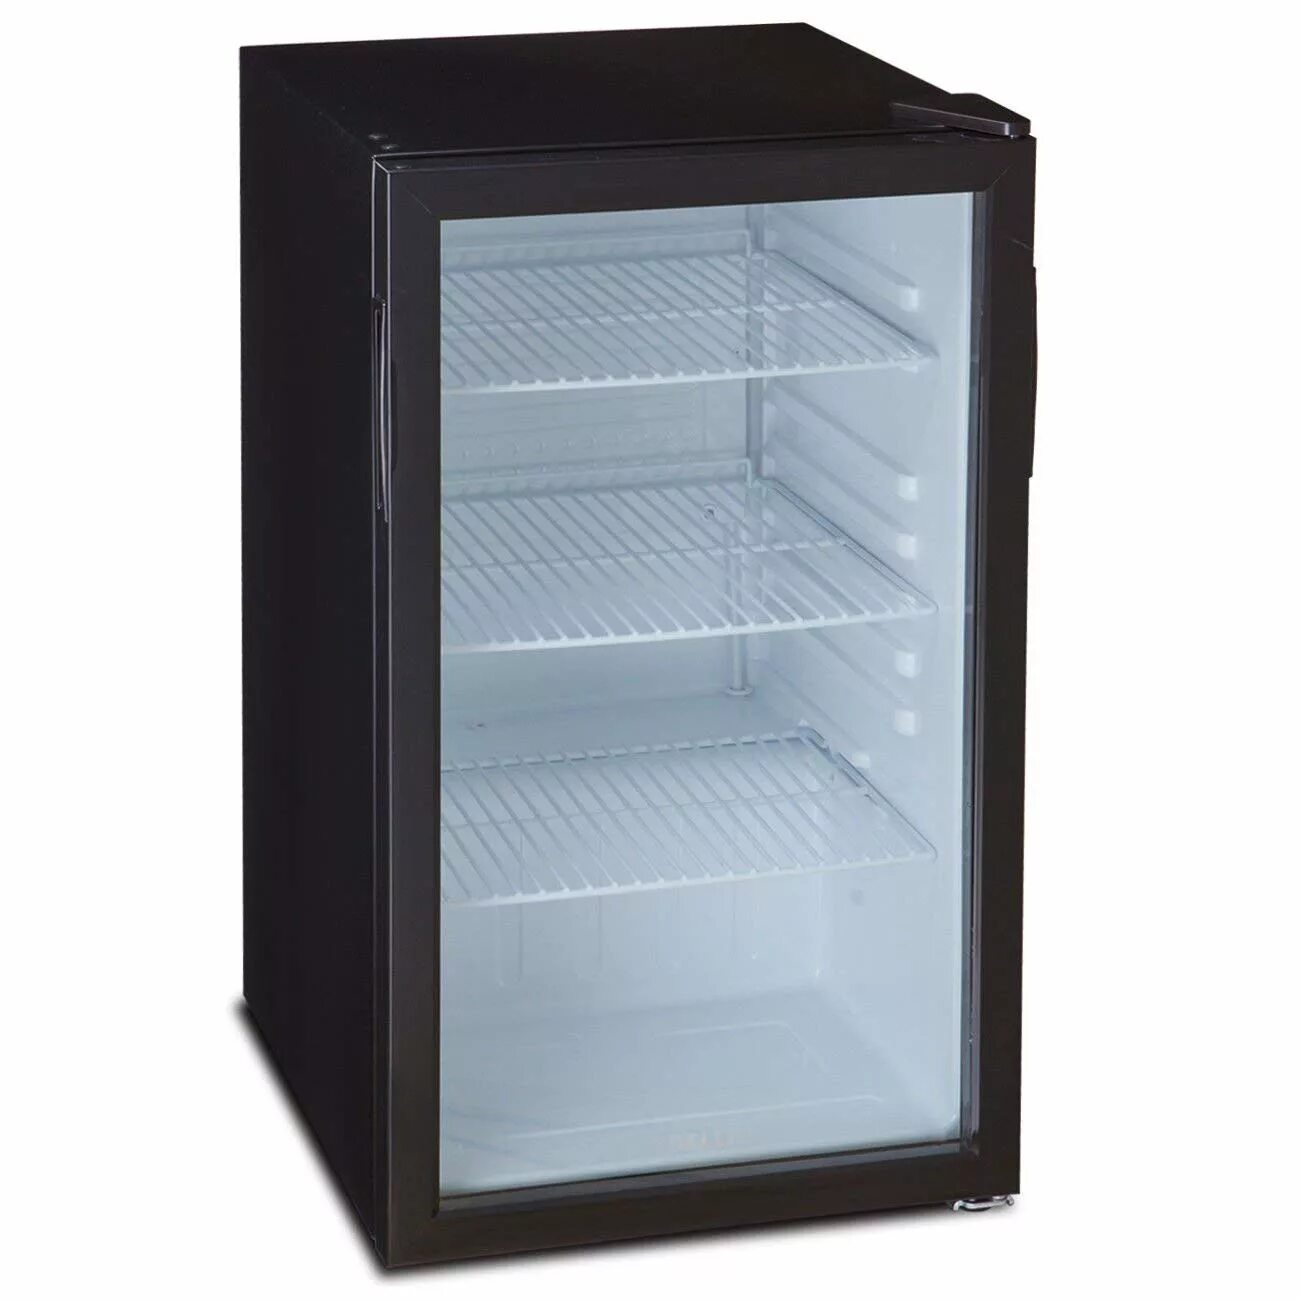 Холодильник Бирюса барный со стеклянной дверью. Polair морозильный шкаф с прозрачной дверью. Холодильник Бирюса со стеклянной дверцей. Холодильник Бирюса со стеклянной дверью маленький.